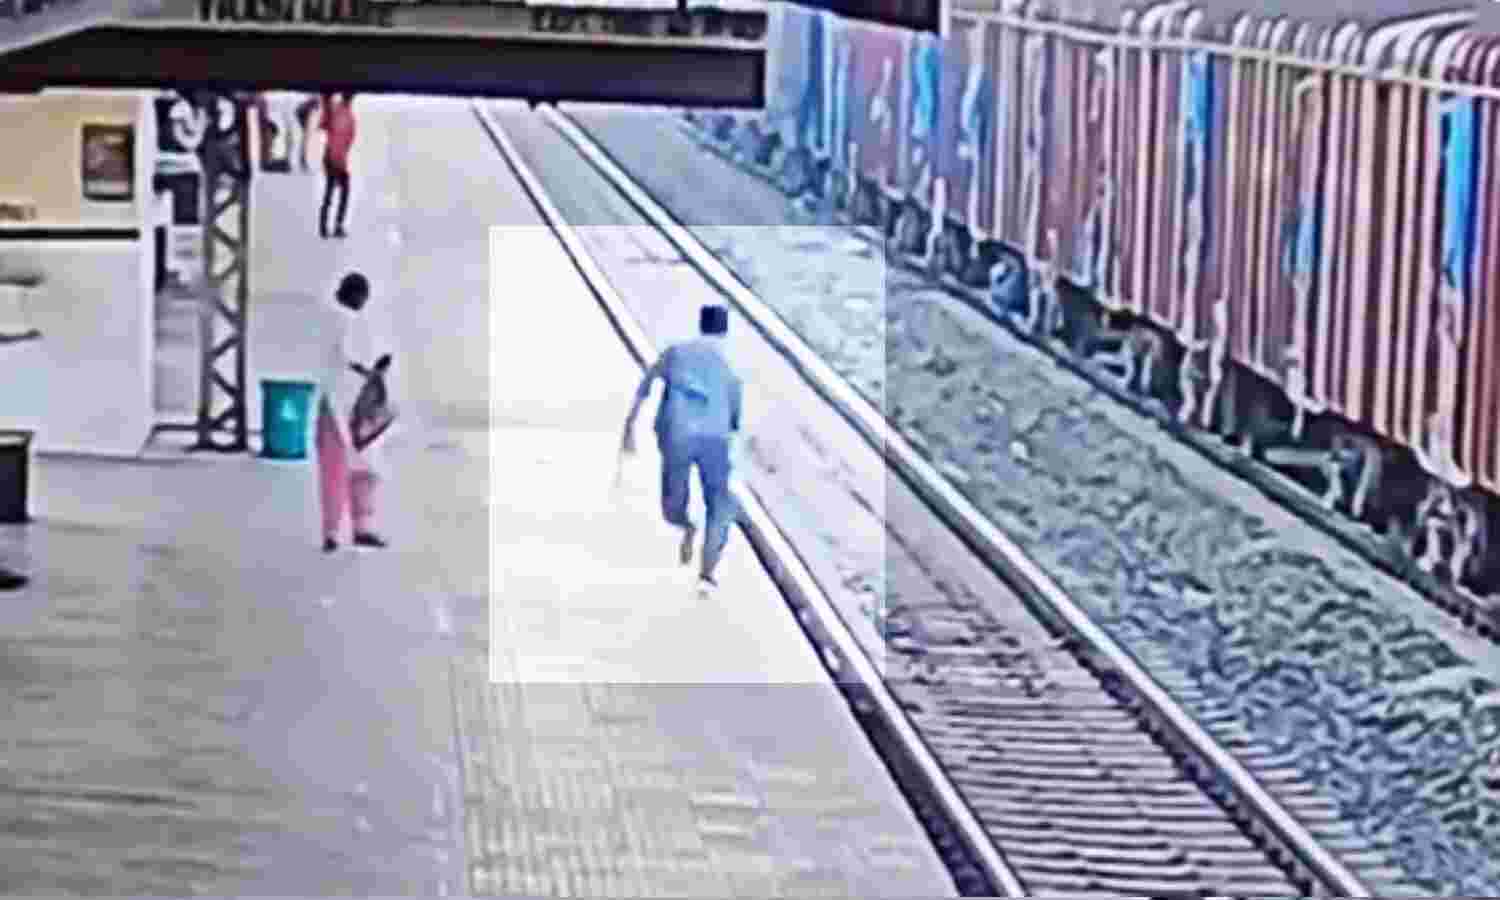 Viral Video : सामने से आ रही थी ट्रेन तभी रेलकर्मी को पटरी पर पड़ा दिखा शख्स, पलभर में दौड़कर ऐसे बचाई जान